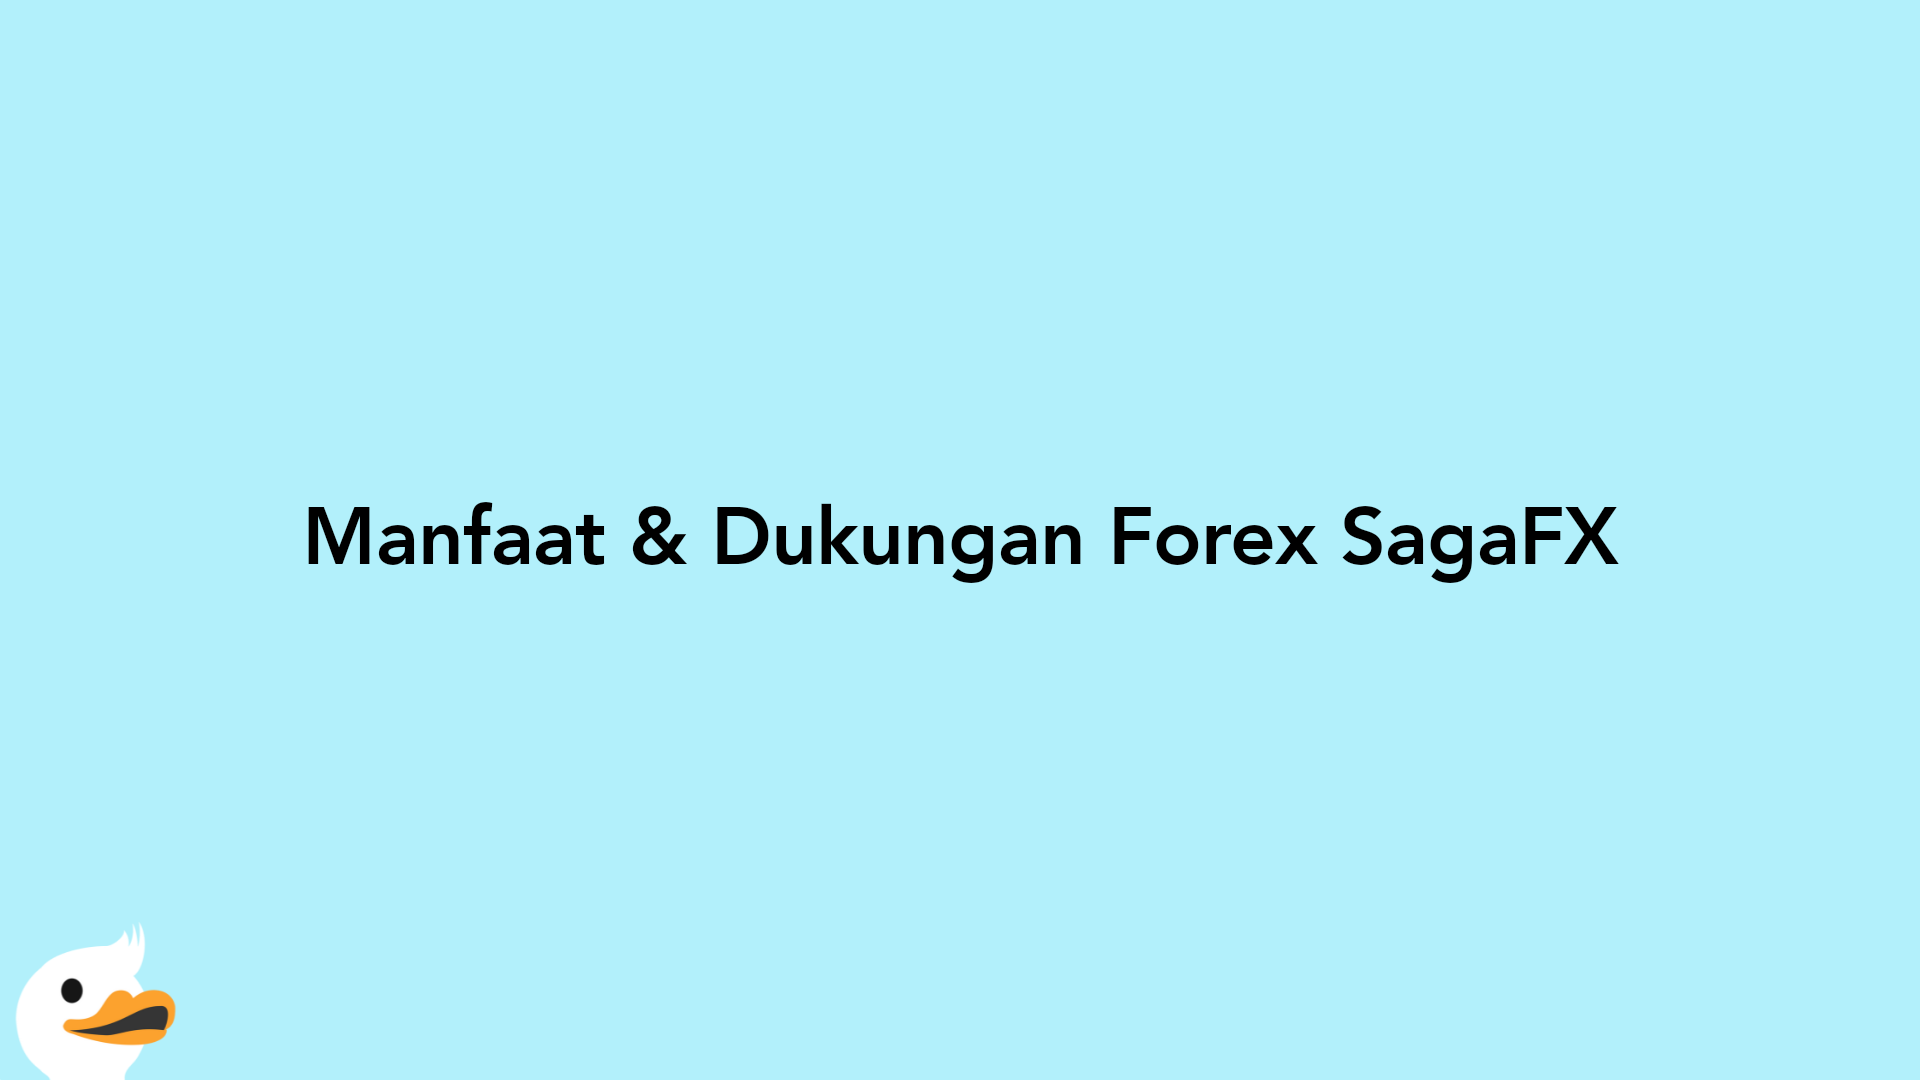 Manfaat & Dukungan Forex SagaFX